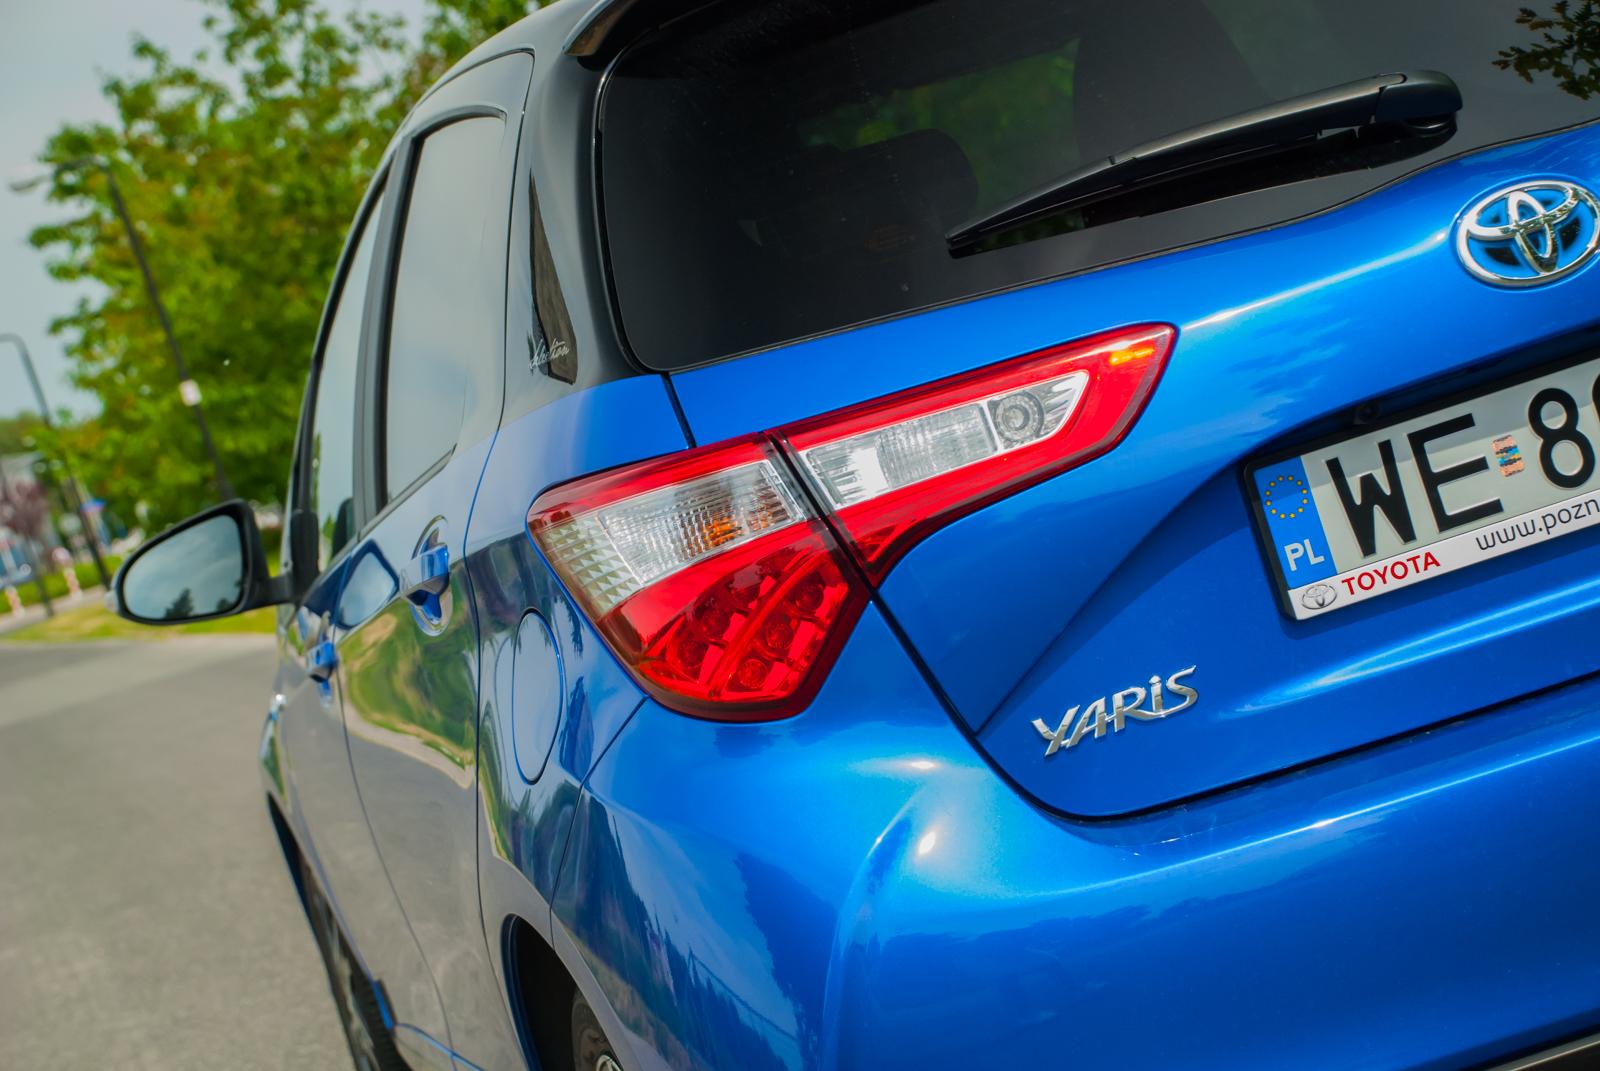 Toyota Yaris Hybrid hybrydowy zawrót głowy • AutoCentrum.pl